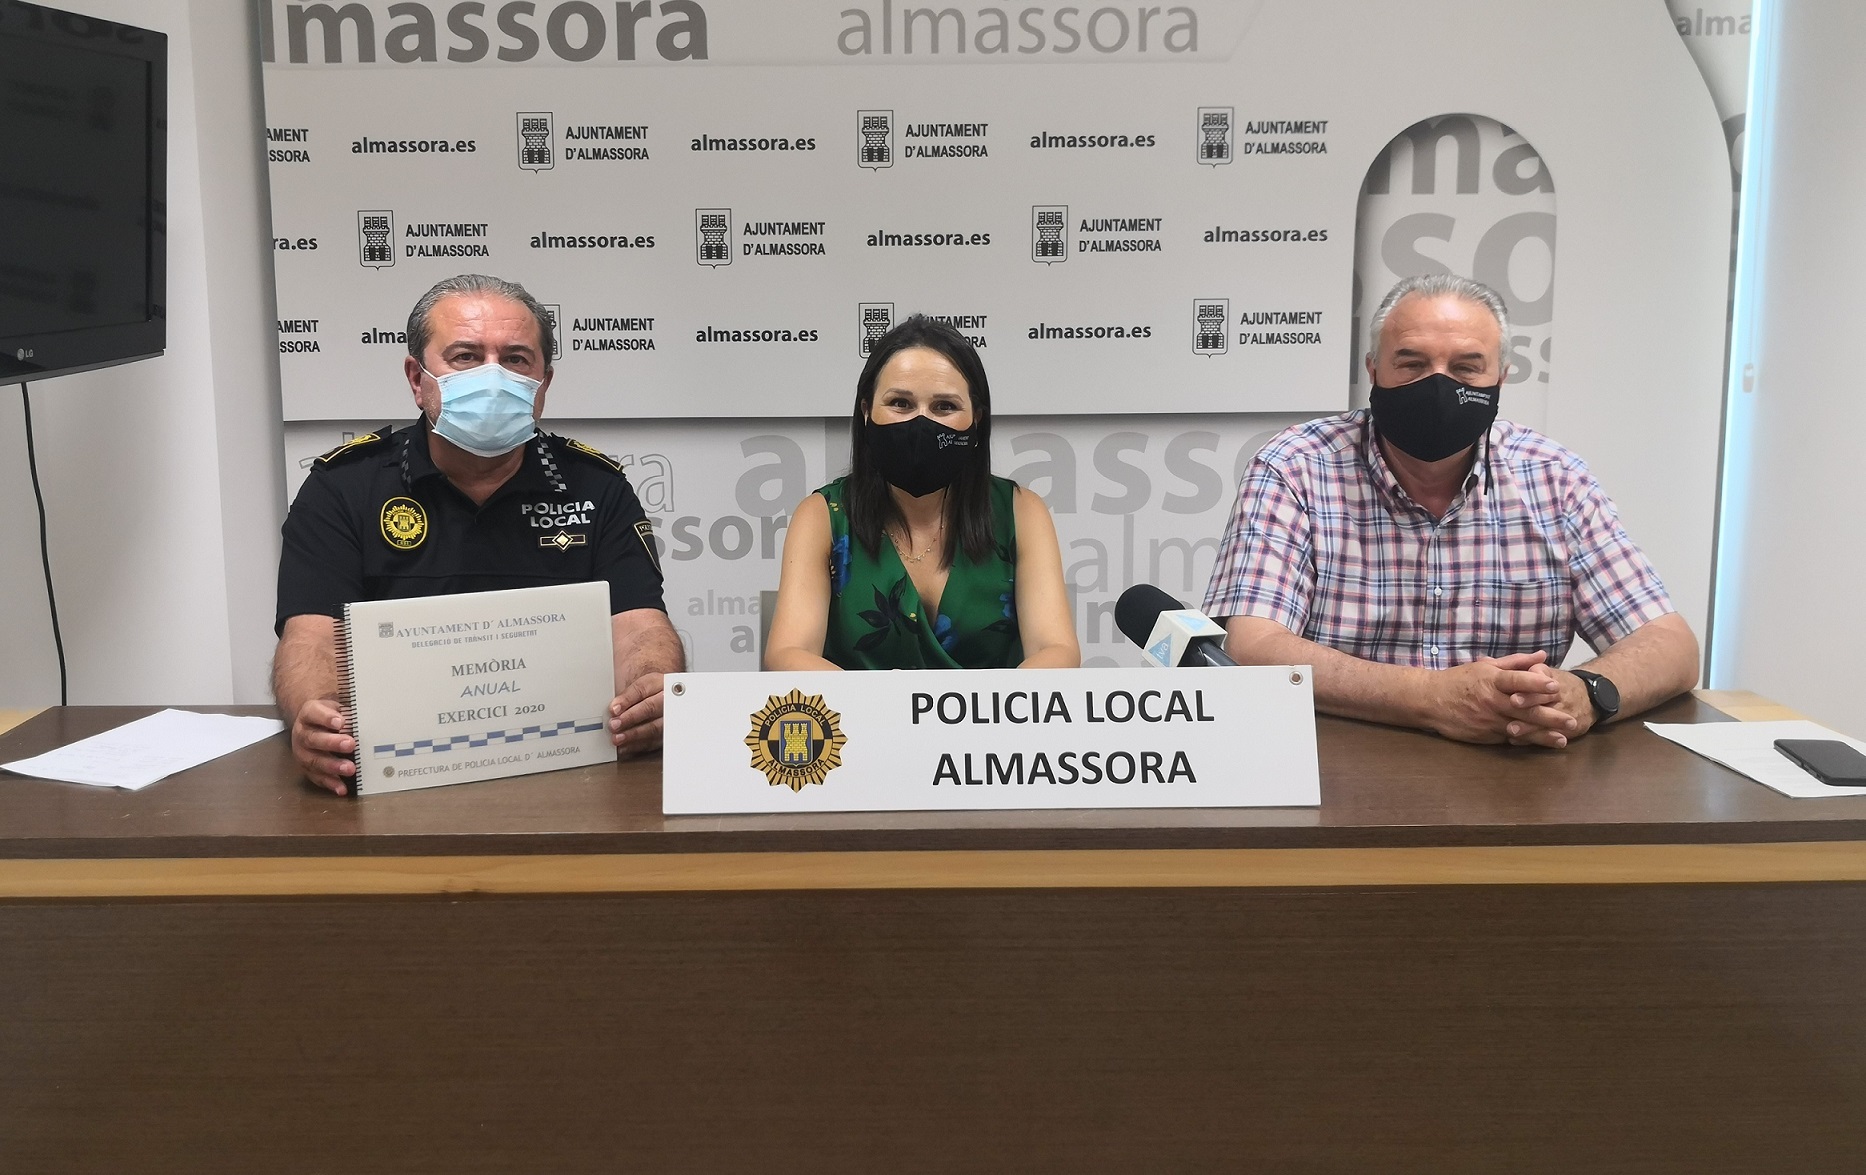 Almassora destaca la actuación en la pandemia y el aumento de plantilla en la memoria anual de su Policía Local